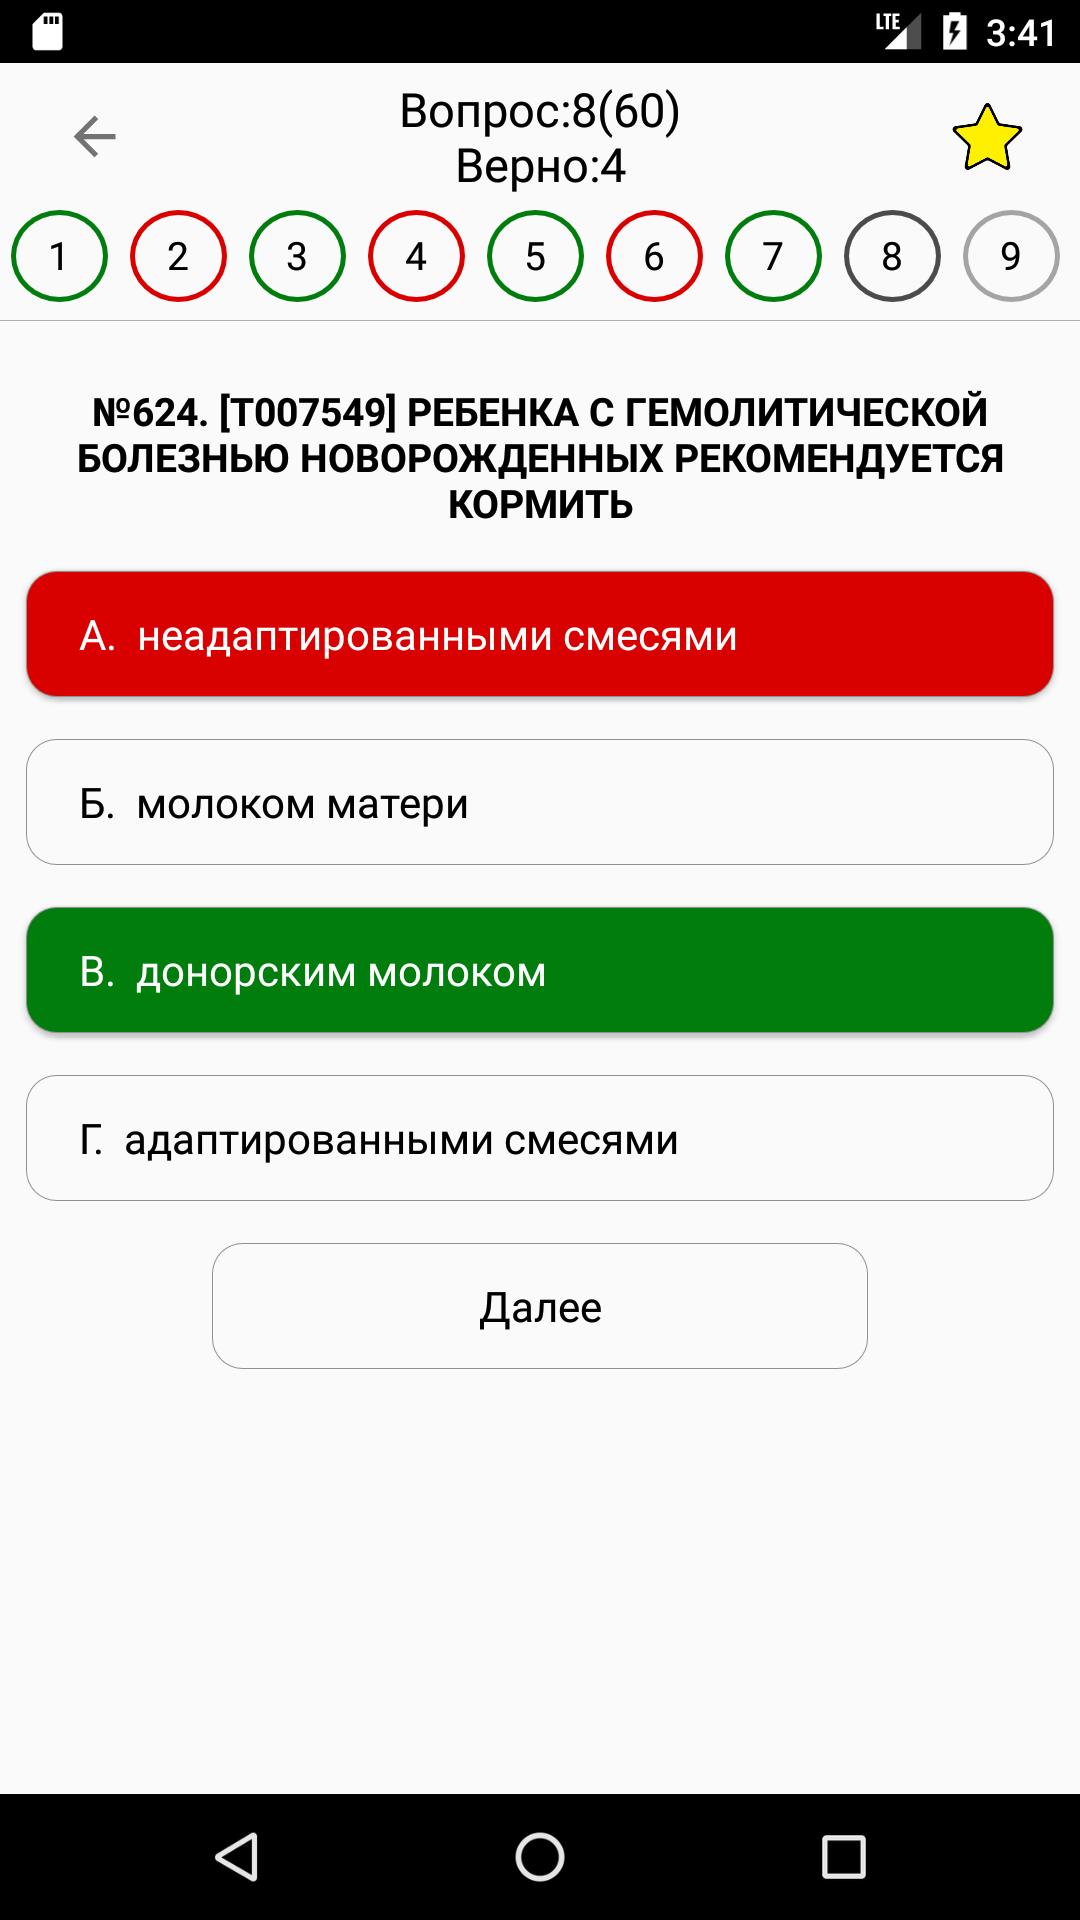 АККРЕДИТАЦИЯ СПО 2019 1.2.0 Screenshot 3